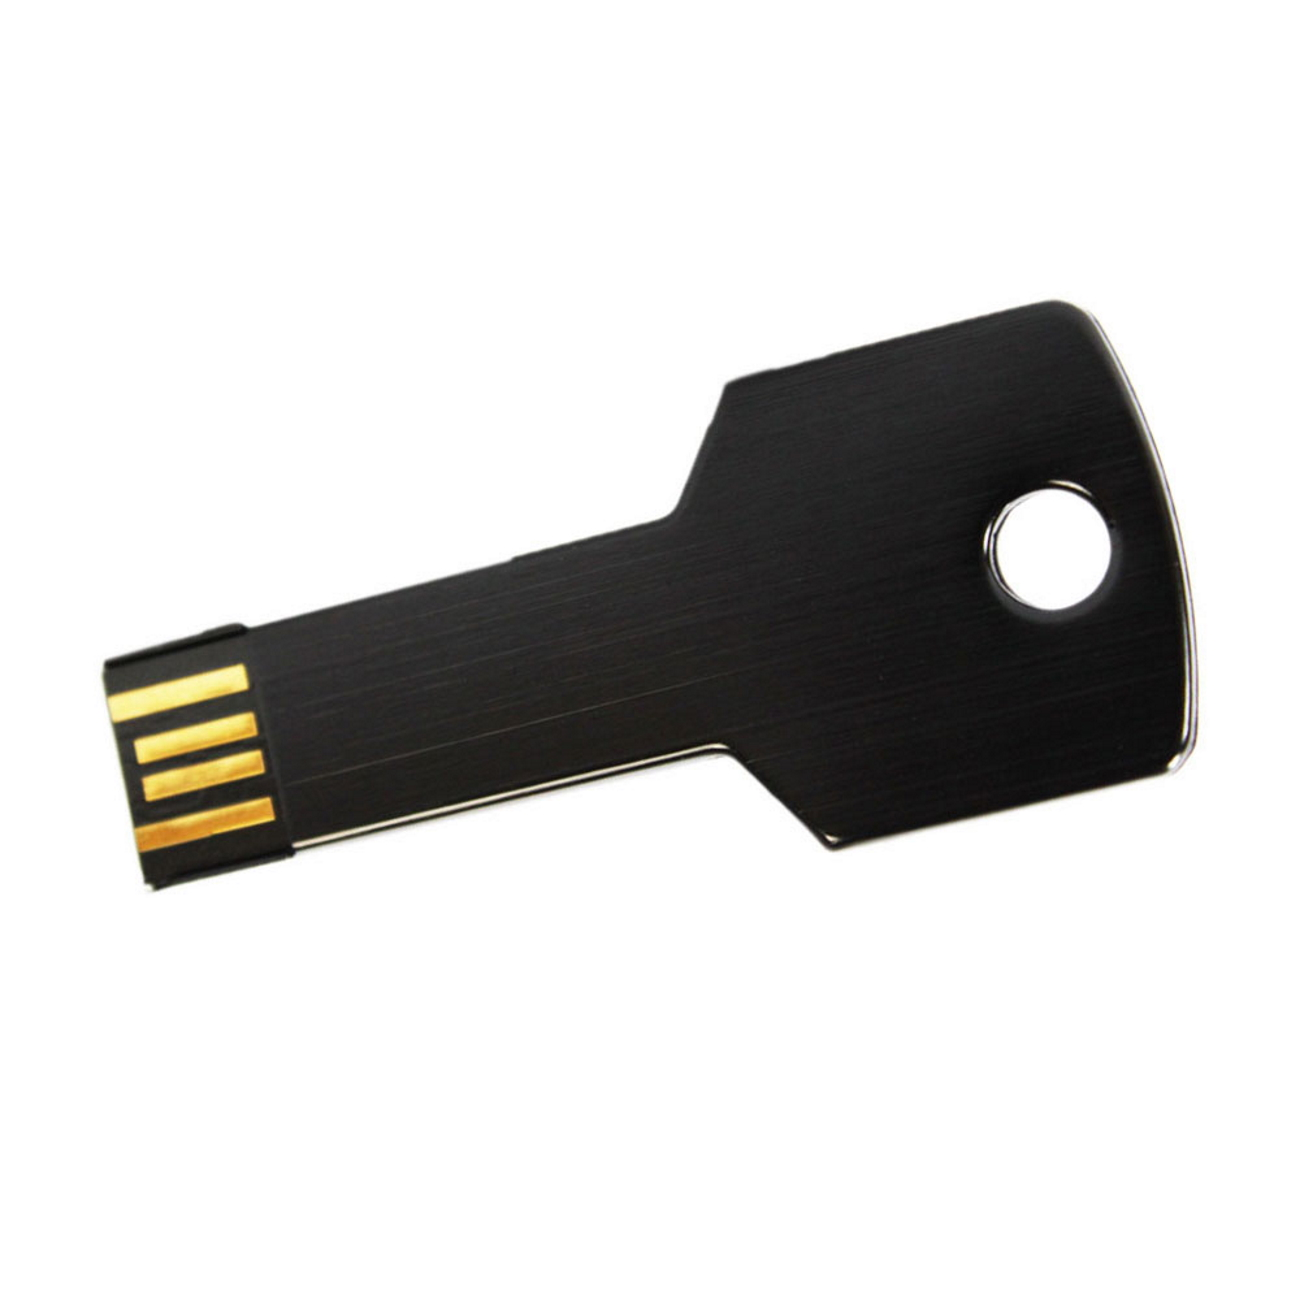 USB GERMANY Key Schwarz 1GB GB) USB-Stick (Schwarz, 1